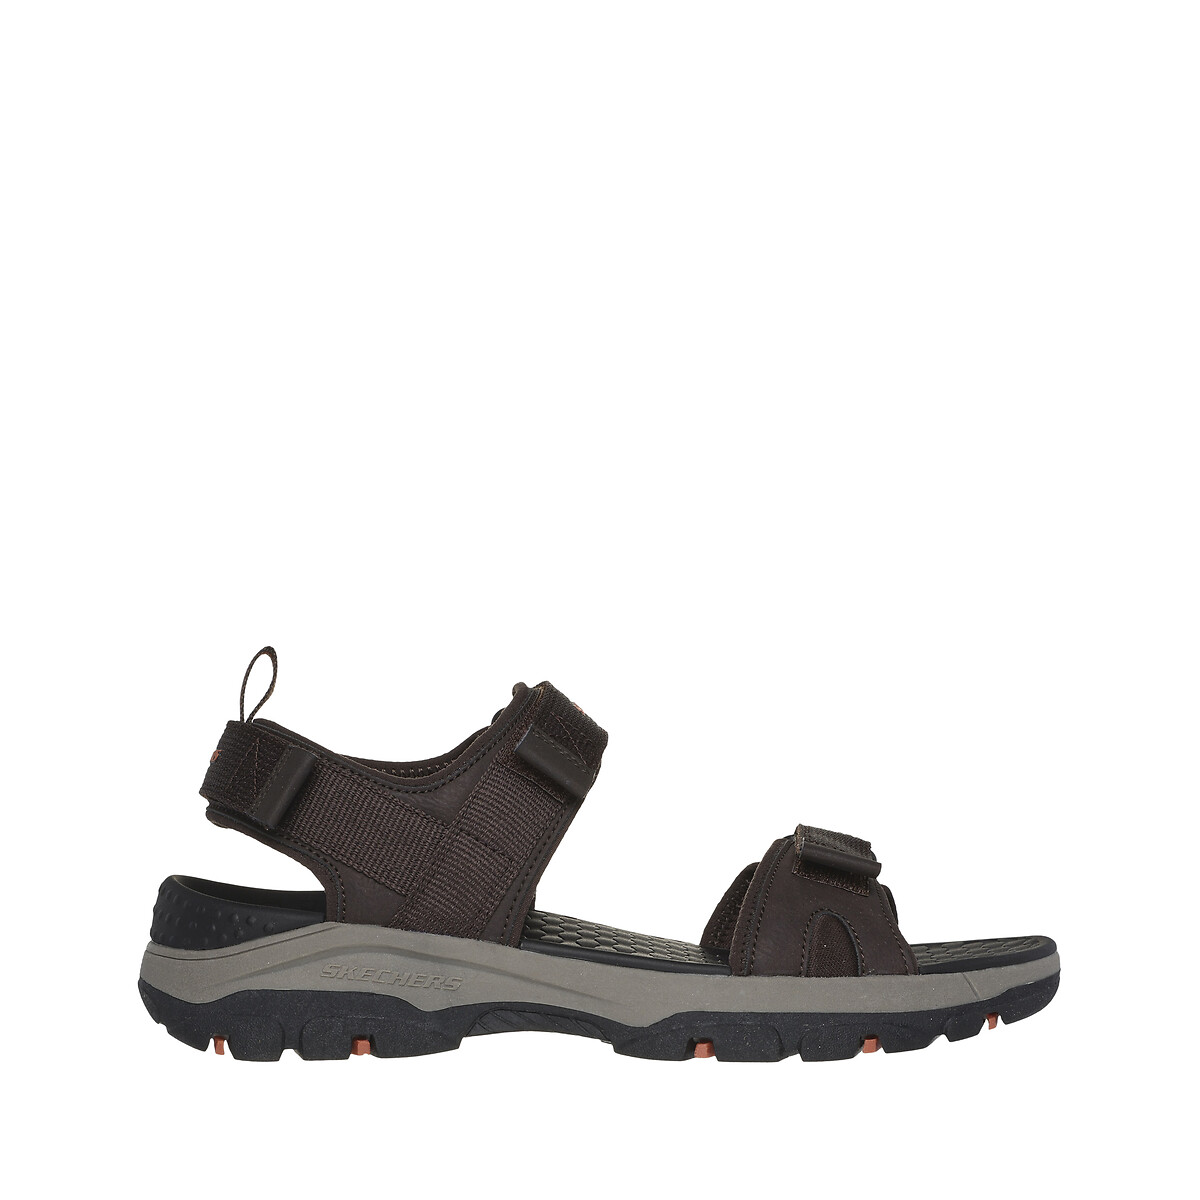 Tresmen - Ryer Sandals